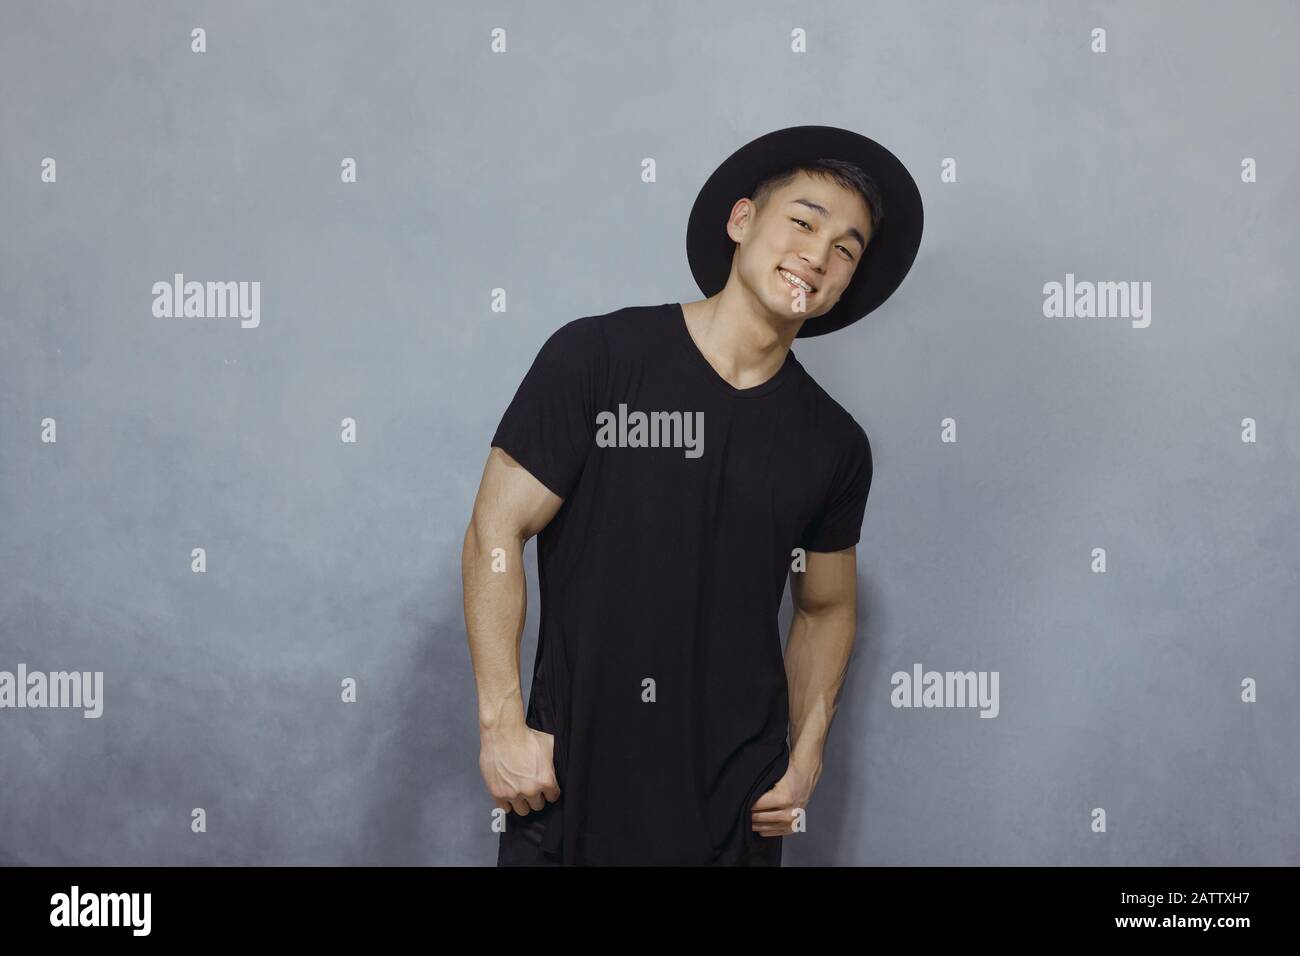 Bel homme asiatique avec coupe courte se posant dans un chapeau noir  tendance et un t-shirt noir sur fond gris dans le studio. Photo intérieure  d'un gars confiant dans un élégant vêtement